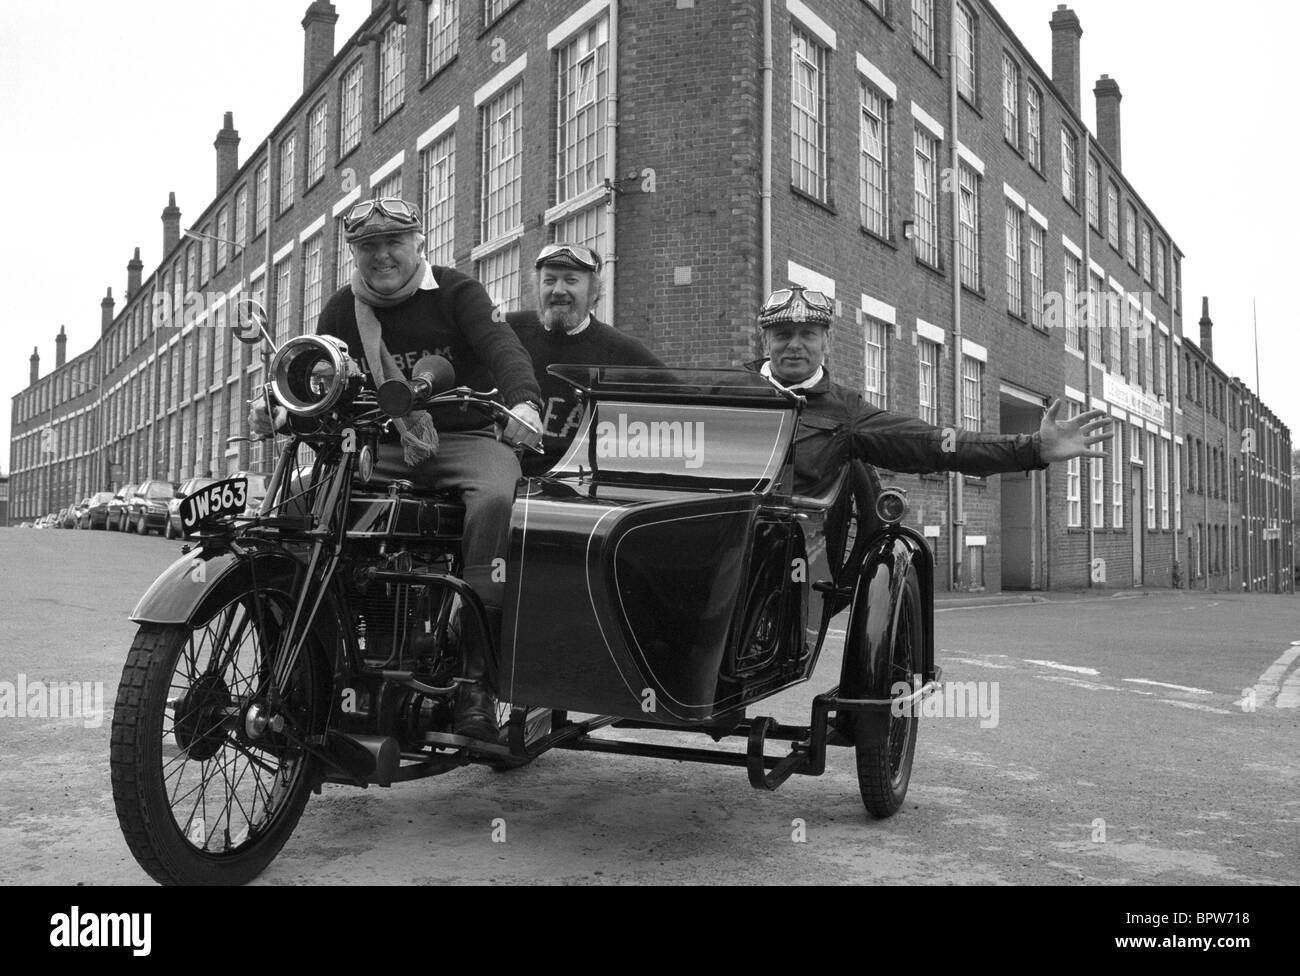 Les amateurs de moto Sunbeam Sunbeam une circonscription et d'un side-car moto passé dans l'ancienne usine Sunbeam à Wolverhampton Banque D'Images